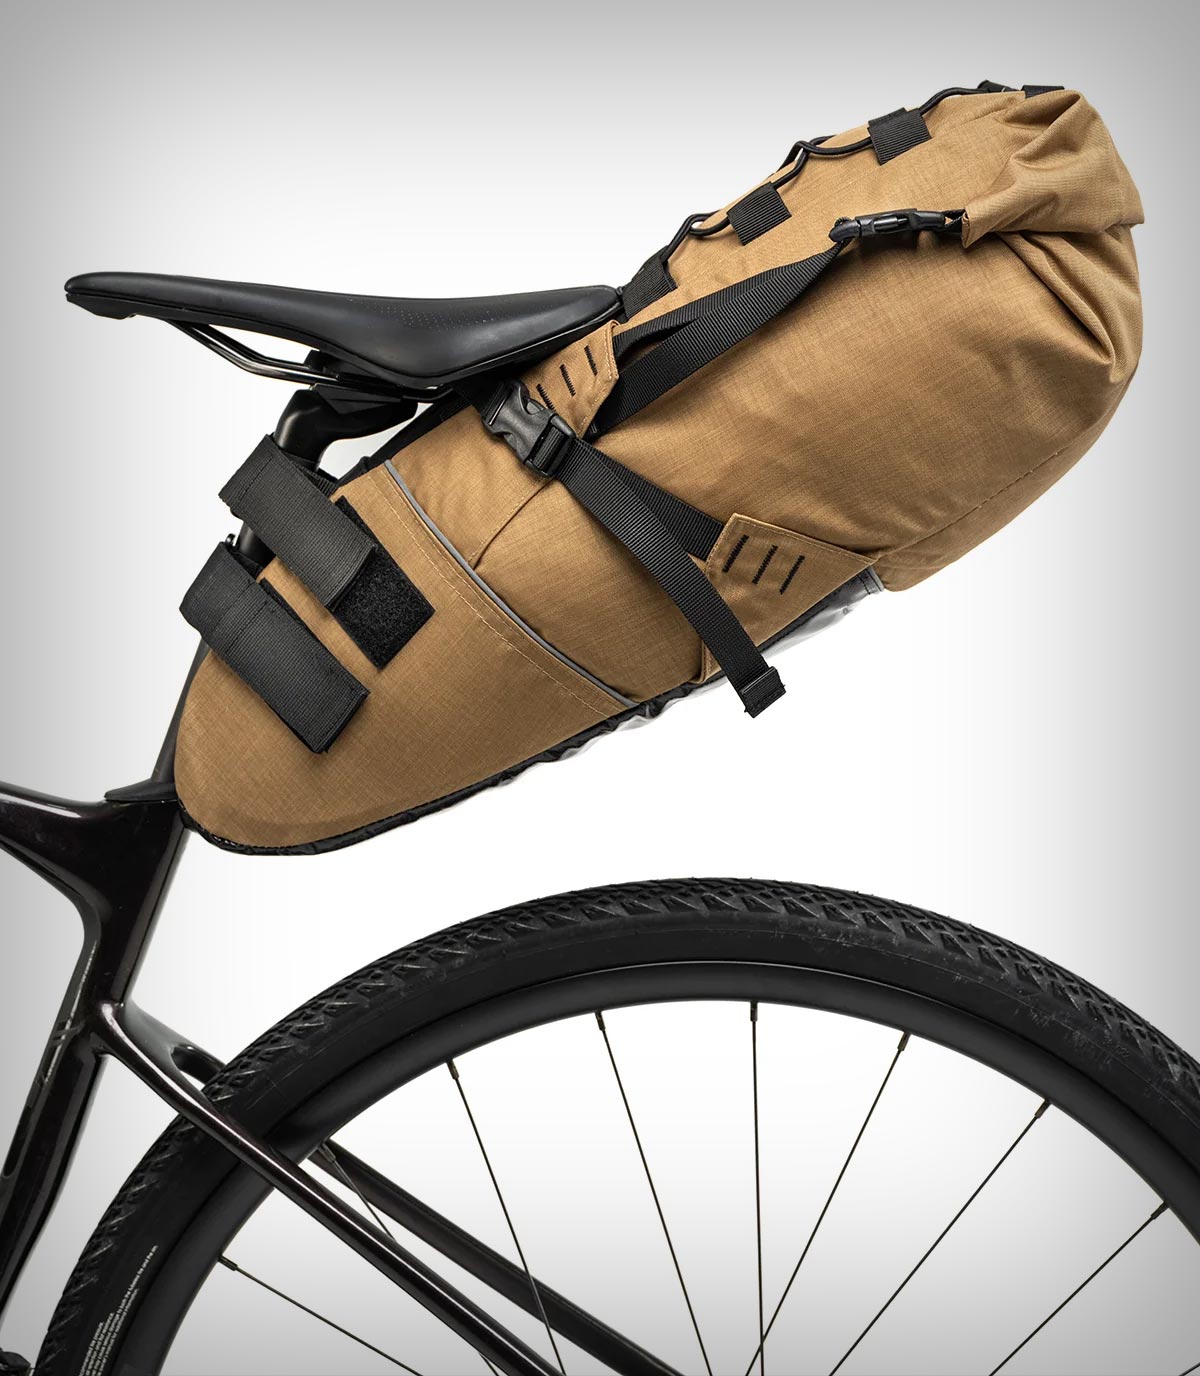 Pack2Ride Inova, una bolsa de sillín de alta capacidad diseñada para viajes largos